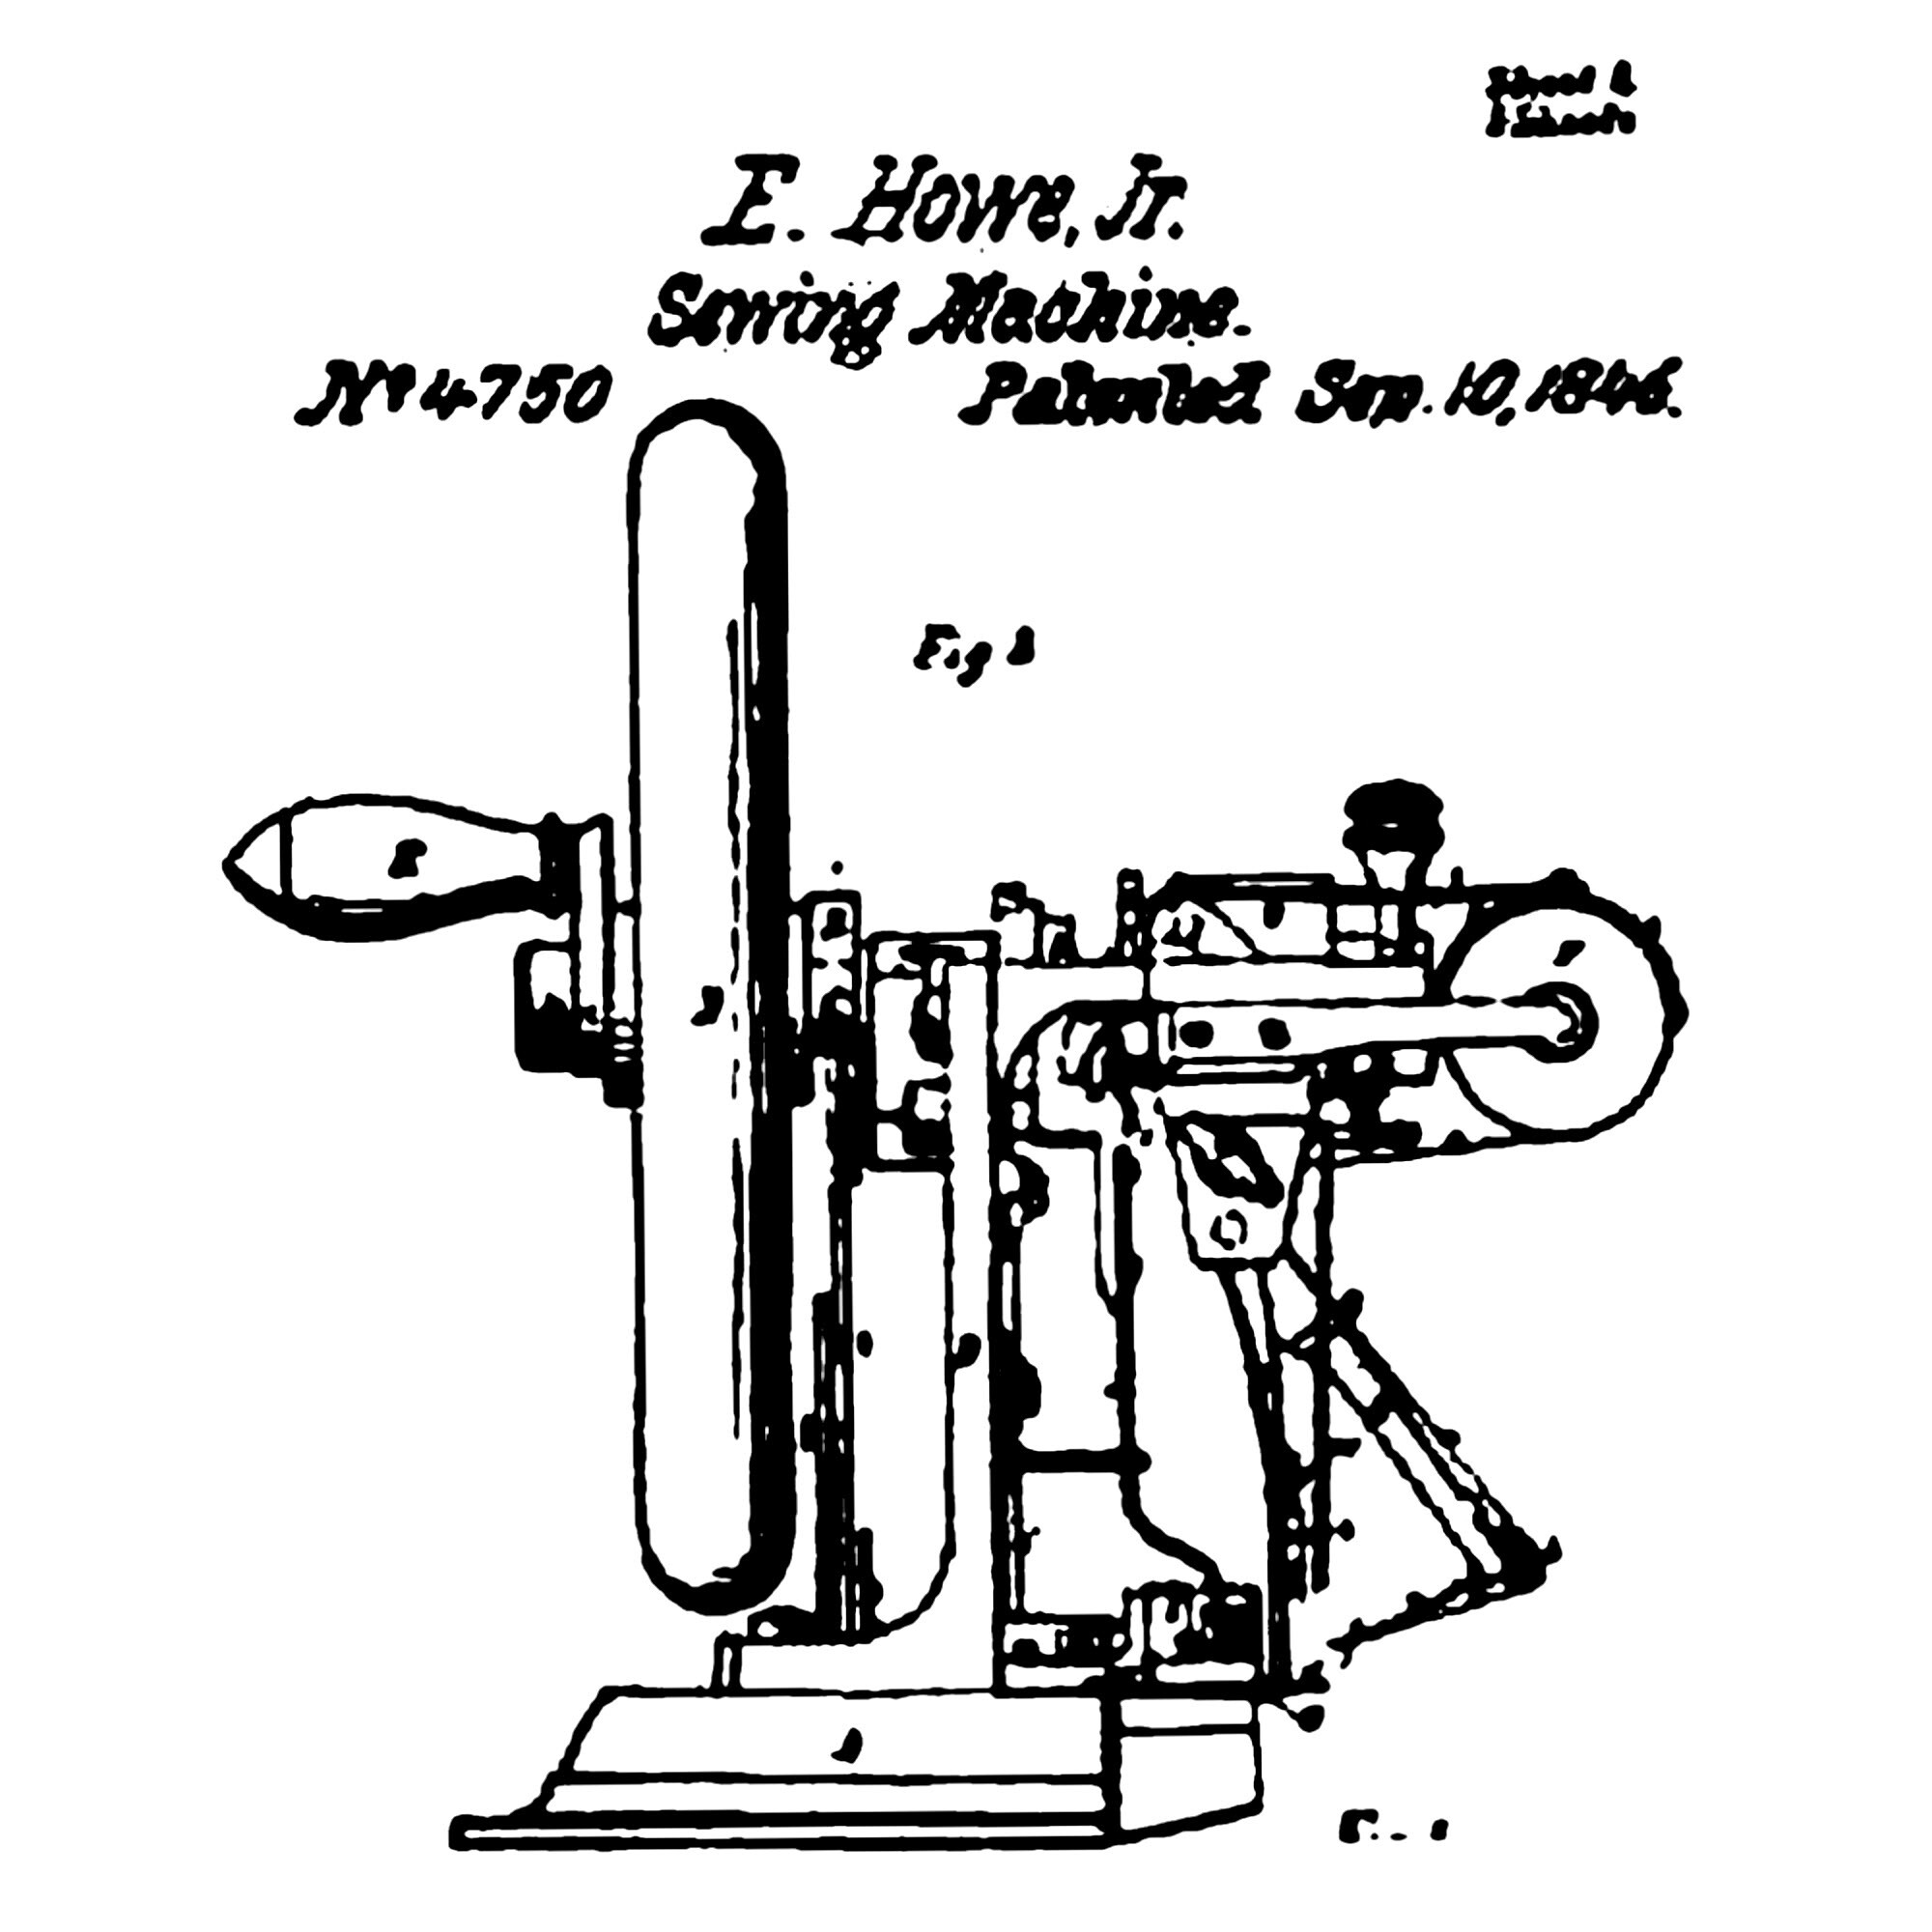 Elias Howe's sewing machine.